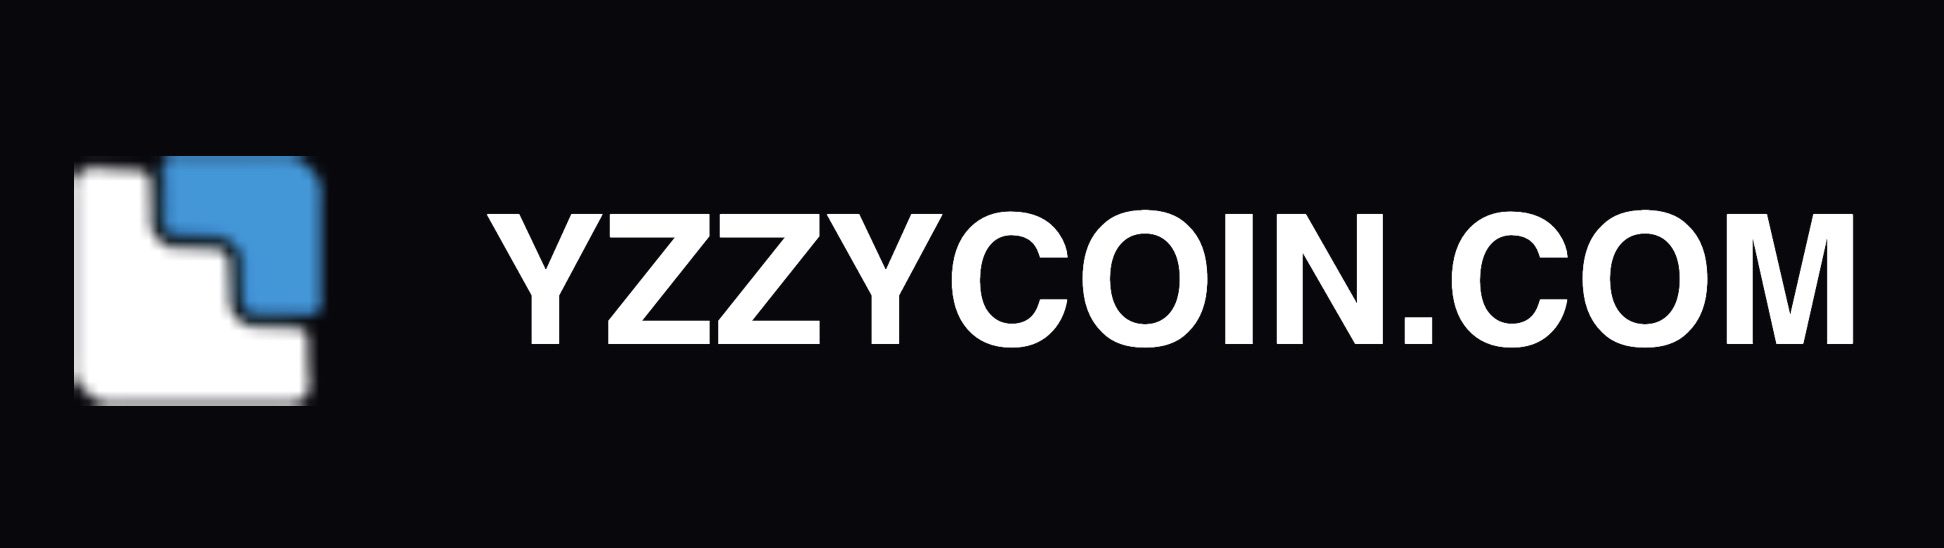 Проект YzzyCoin